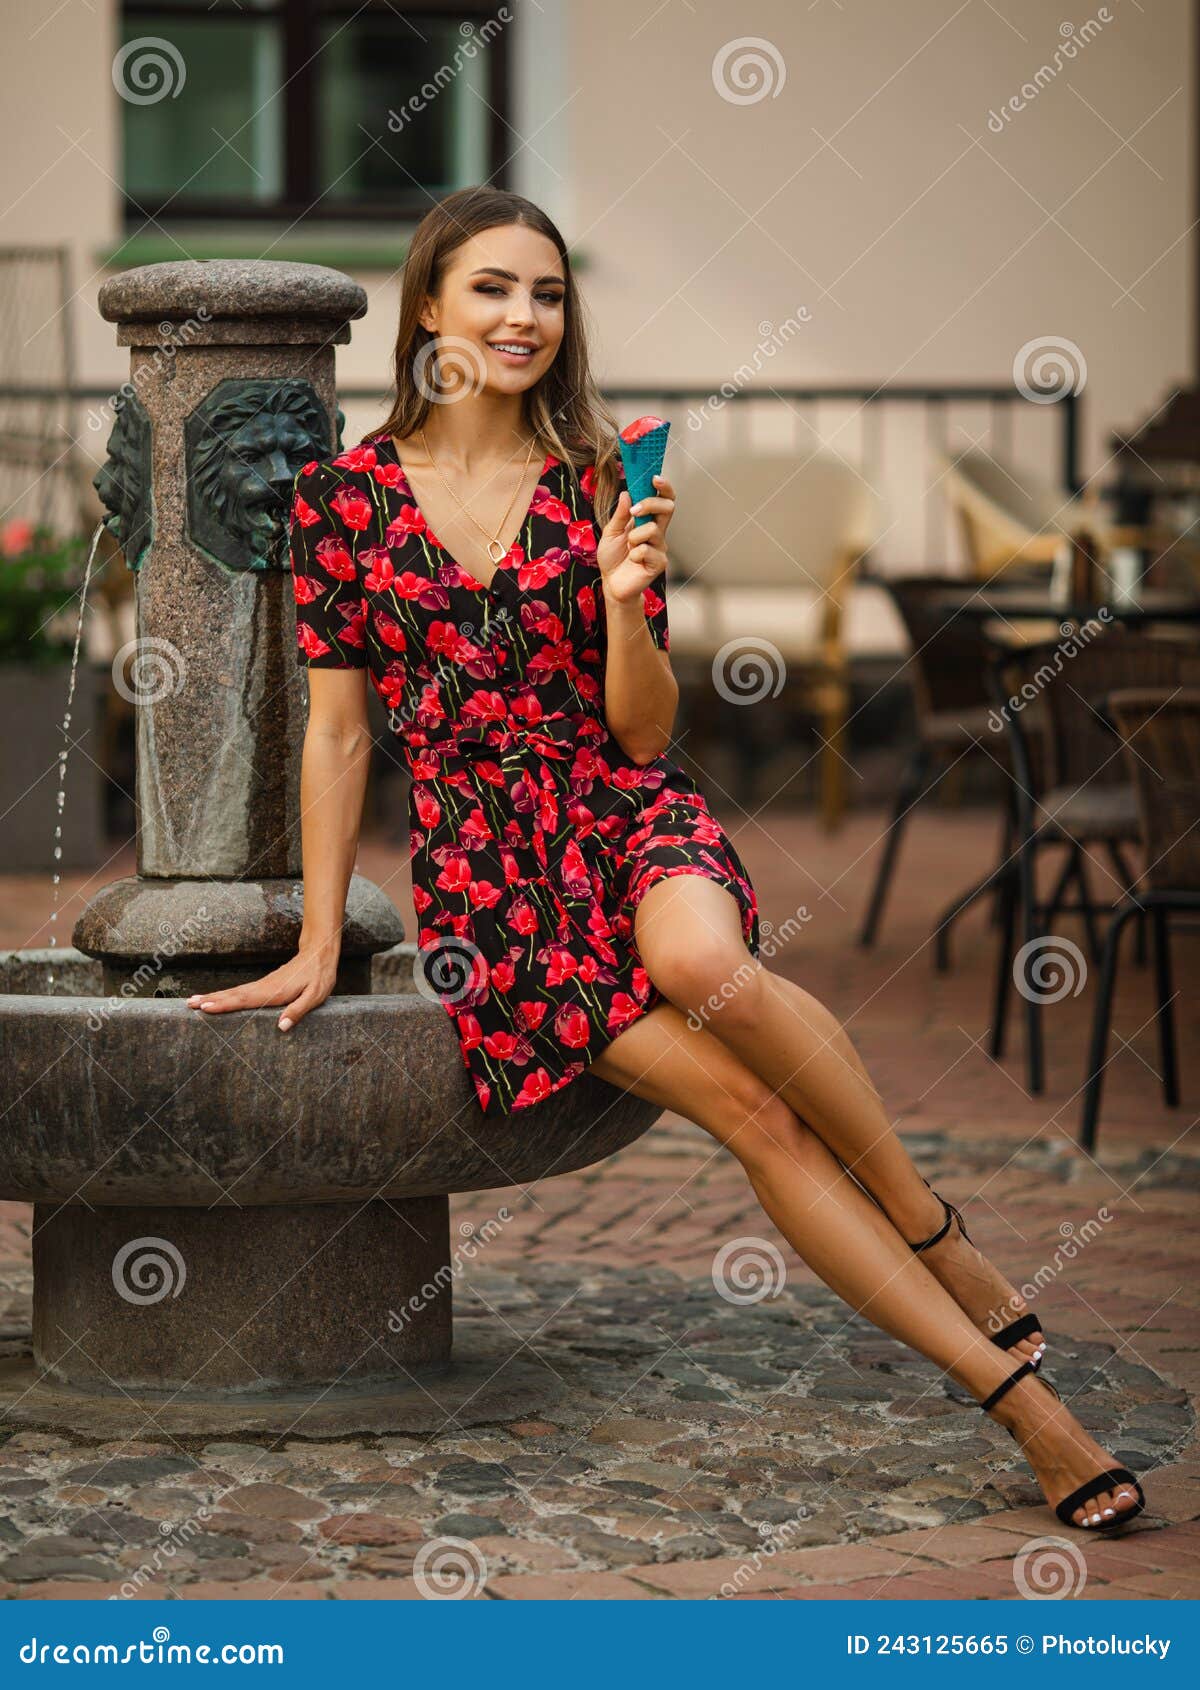 Joven Y Alegre Mujer Con Cabello Ondulado Vestido Con Flores Rojas Comiendo Delicioso Helado Cerca De La Fuente Imagen de archivo - Imagen de gente, encanto: 243125665